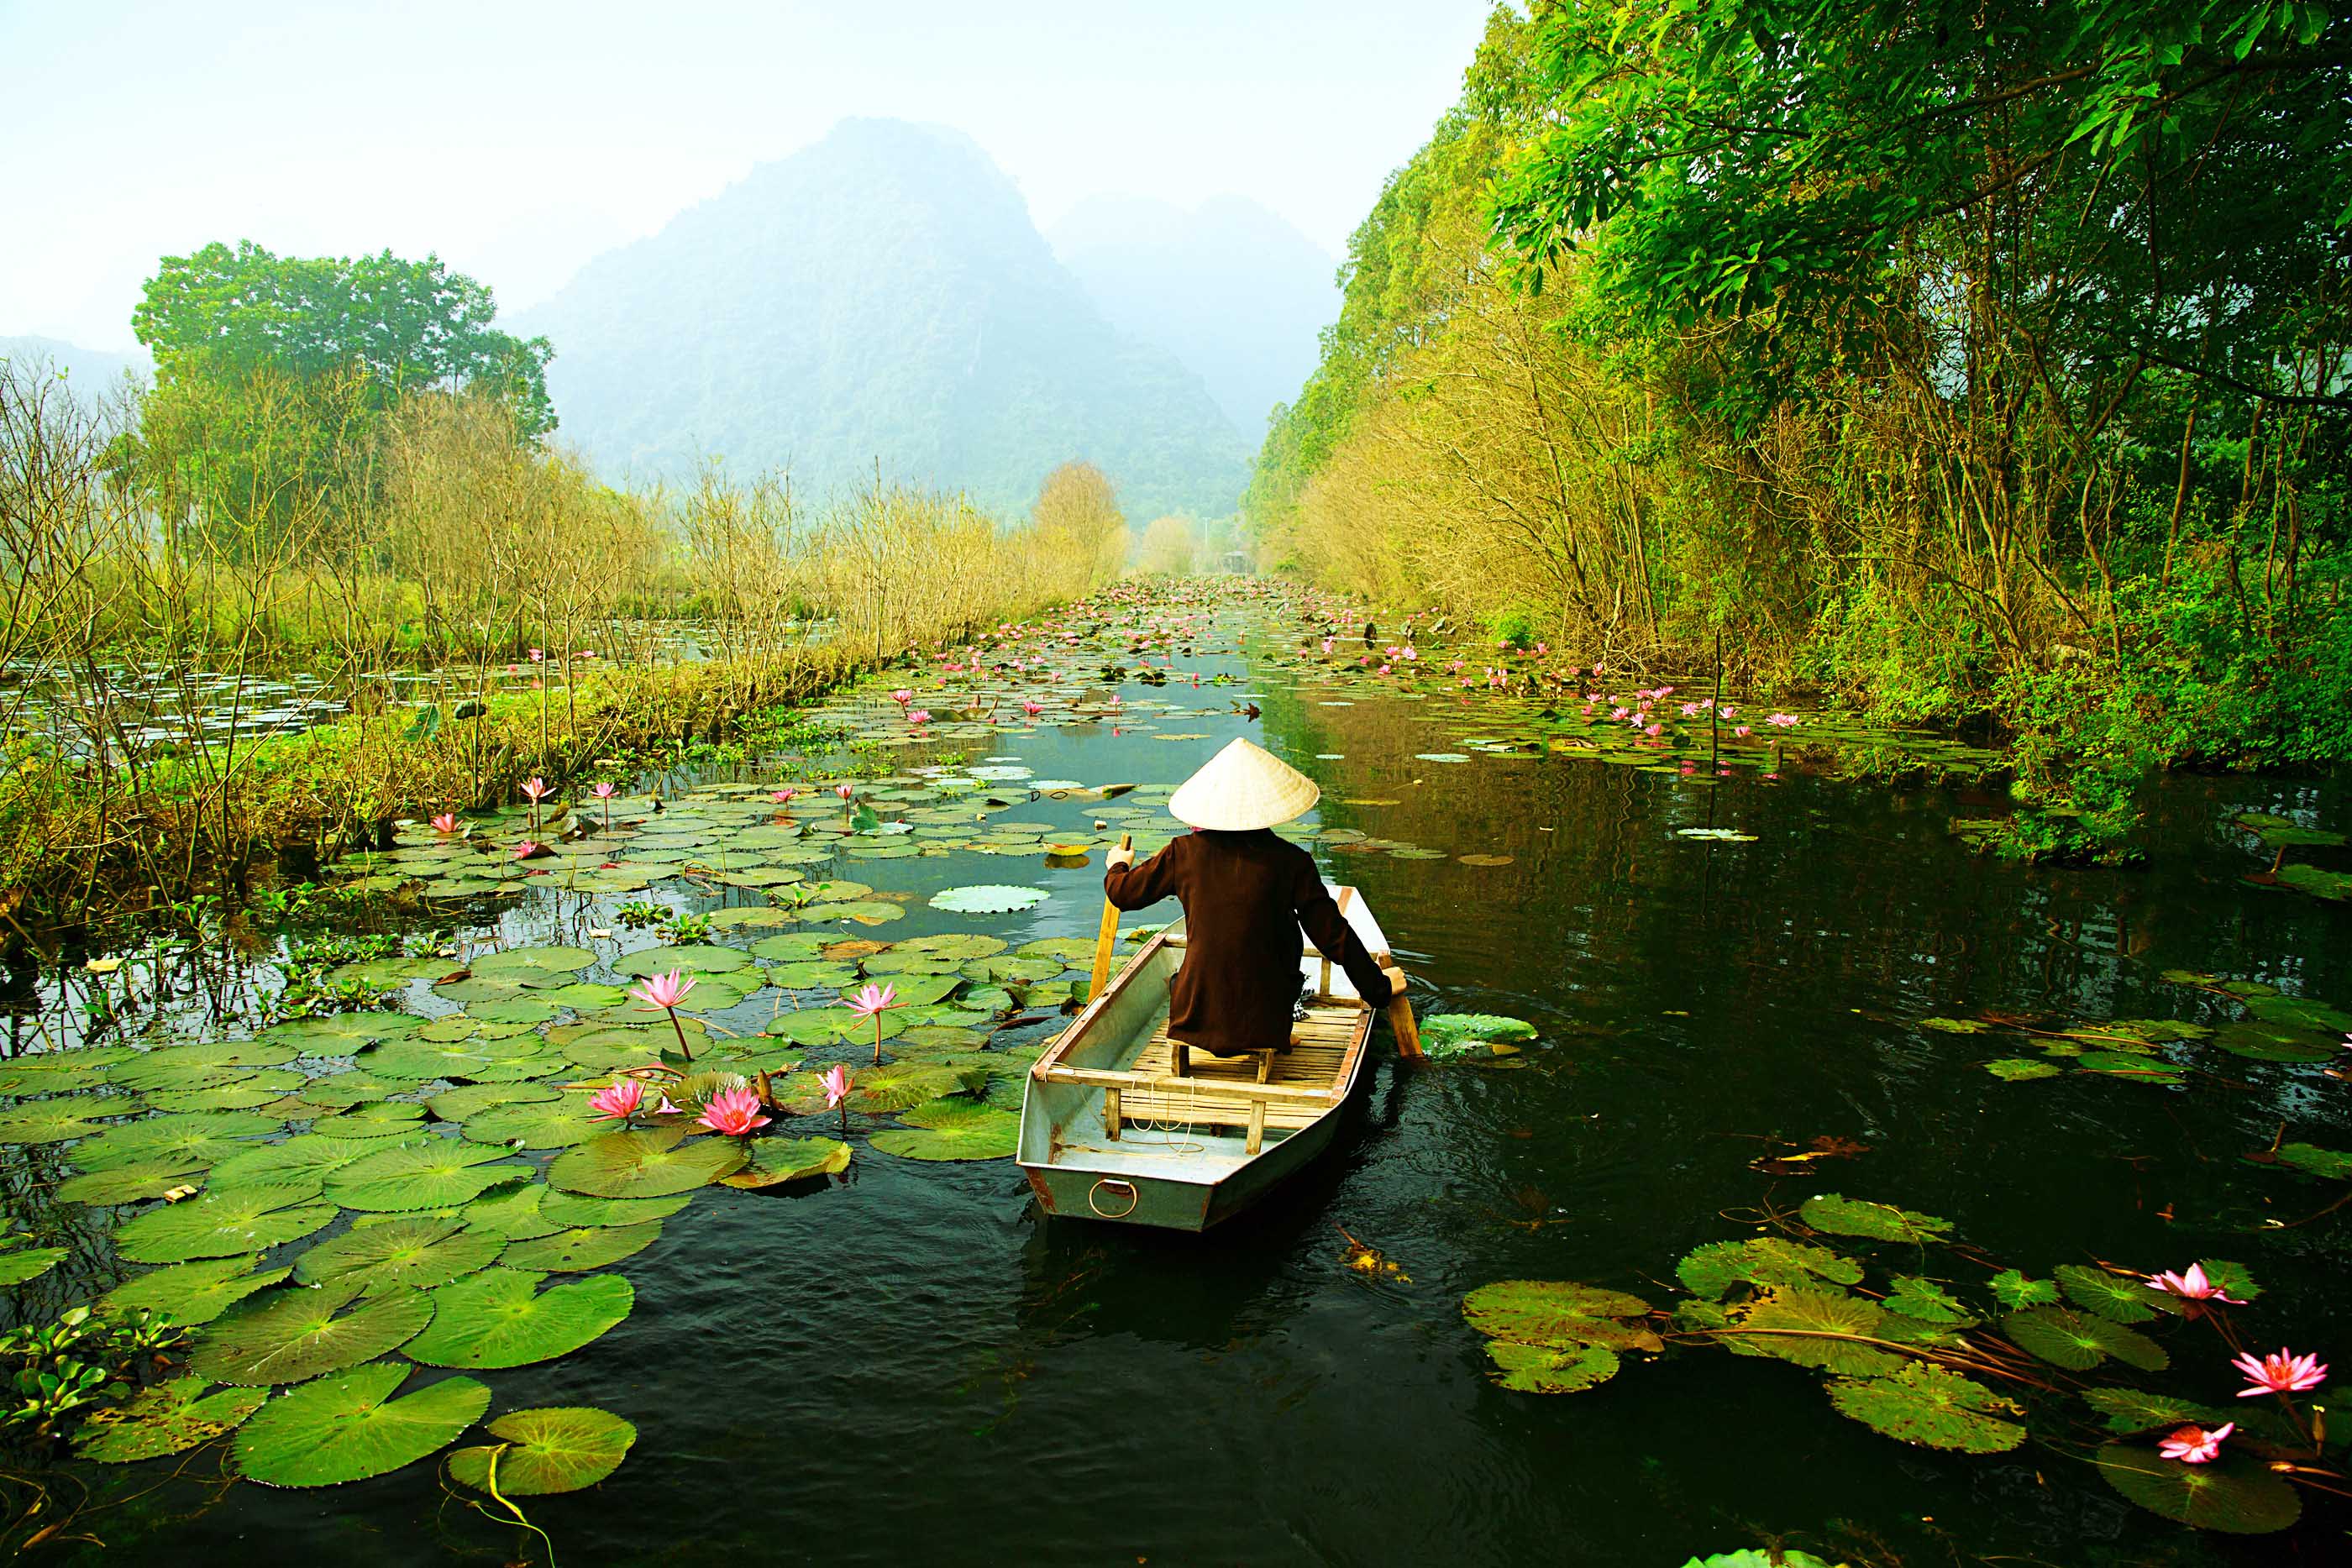 Đi bằng thuyền: Đi bằng thuyền là một hoạt động vô cùng thú vị ở Việt Nam, lần theo dòng sông lững lờ và chiêm ngưỡng cảnh quan đẹp là một trải nghiệm tuyệt vời. Cùng xem những bức ảnh đẹp và cảm nhận sự tuyệt vời của việc đi bằng thuyền trên con sông đầy nắng và gió.